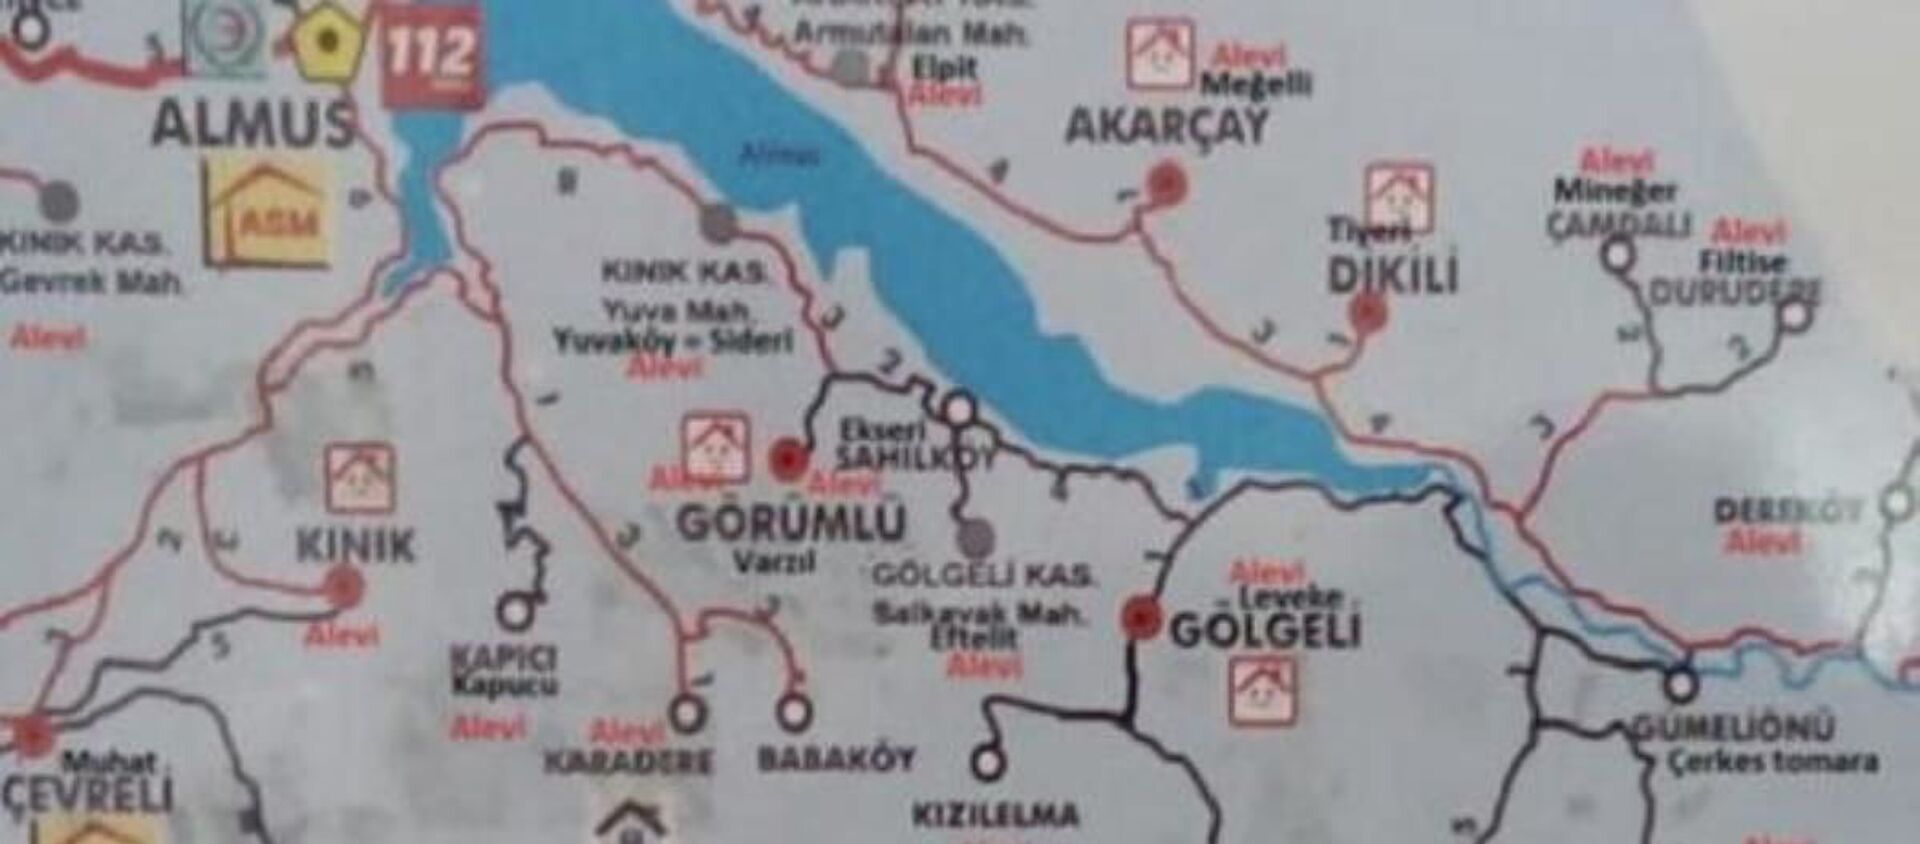 Tokat'ta 'haritalı fişleme' iddiasıyla ilgili doktora soruşturma - Sputnik Türkiye, 1920, 22.01.2021